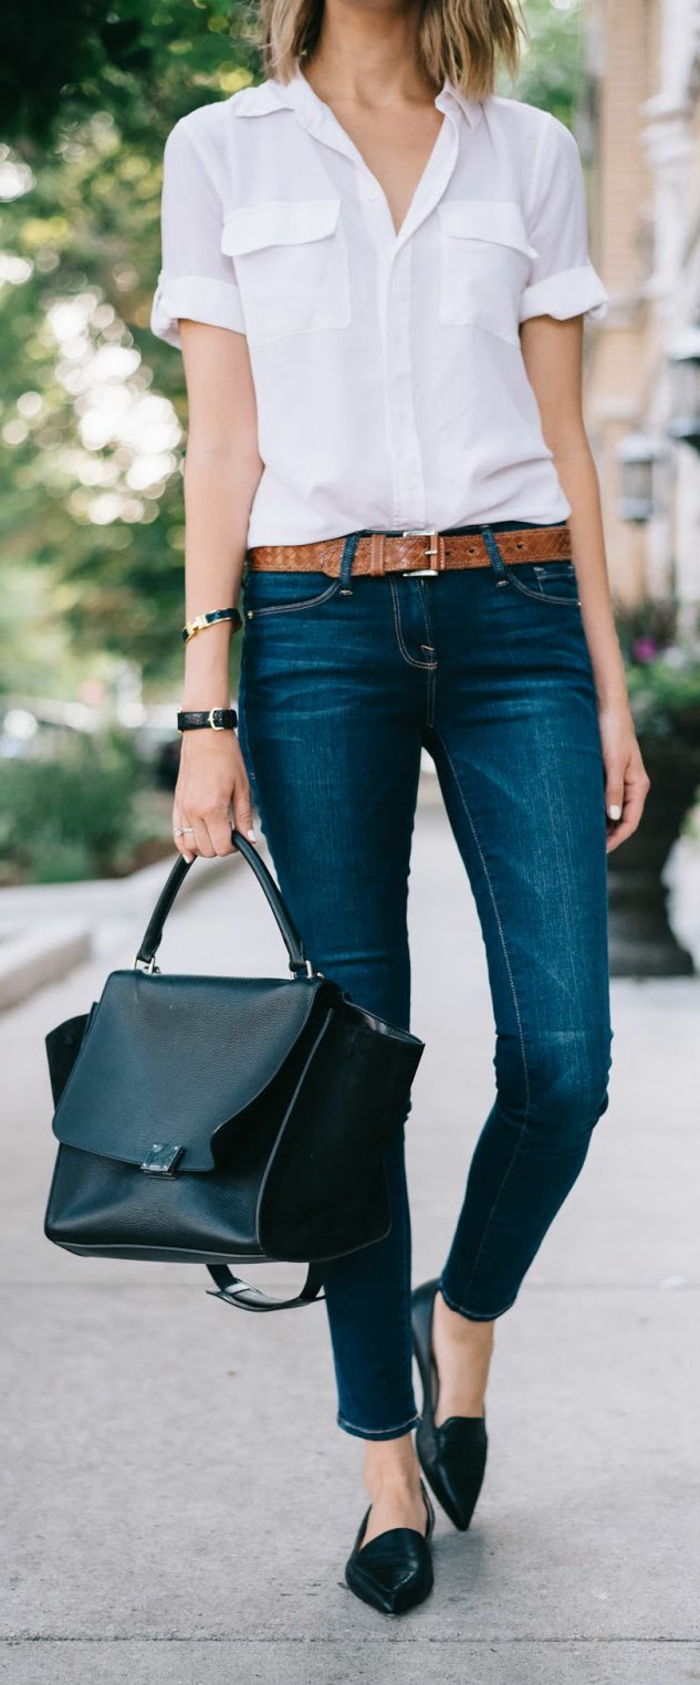 luxe casual wear jeans met bruine riem witte shirt zwarte schoenen tas vrouw